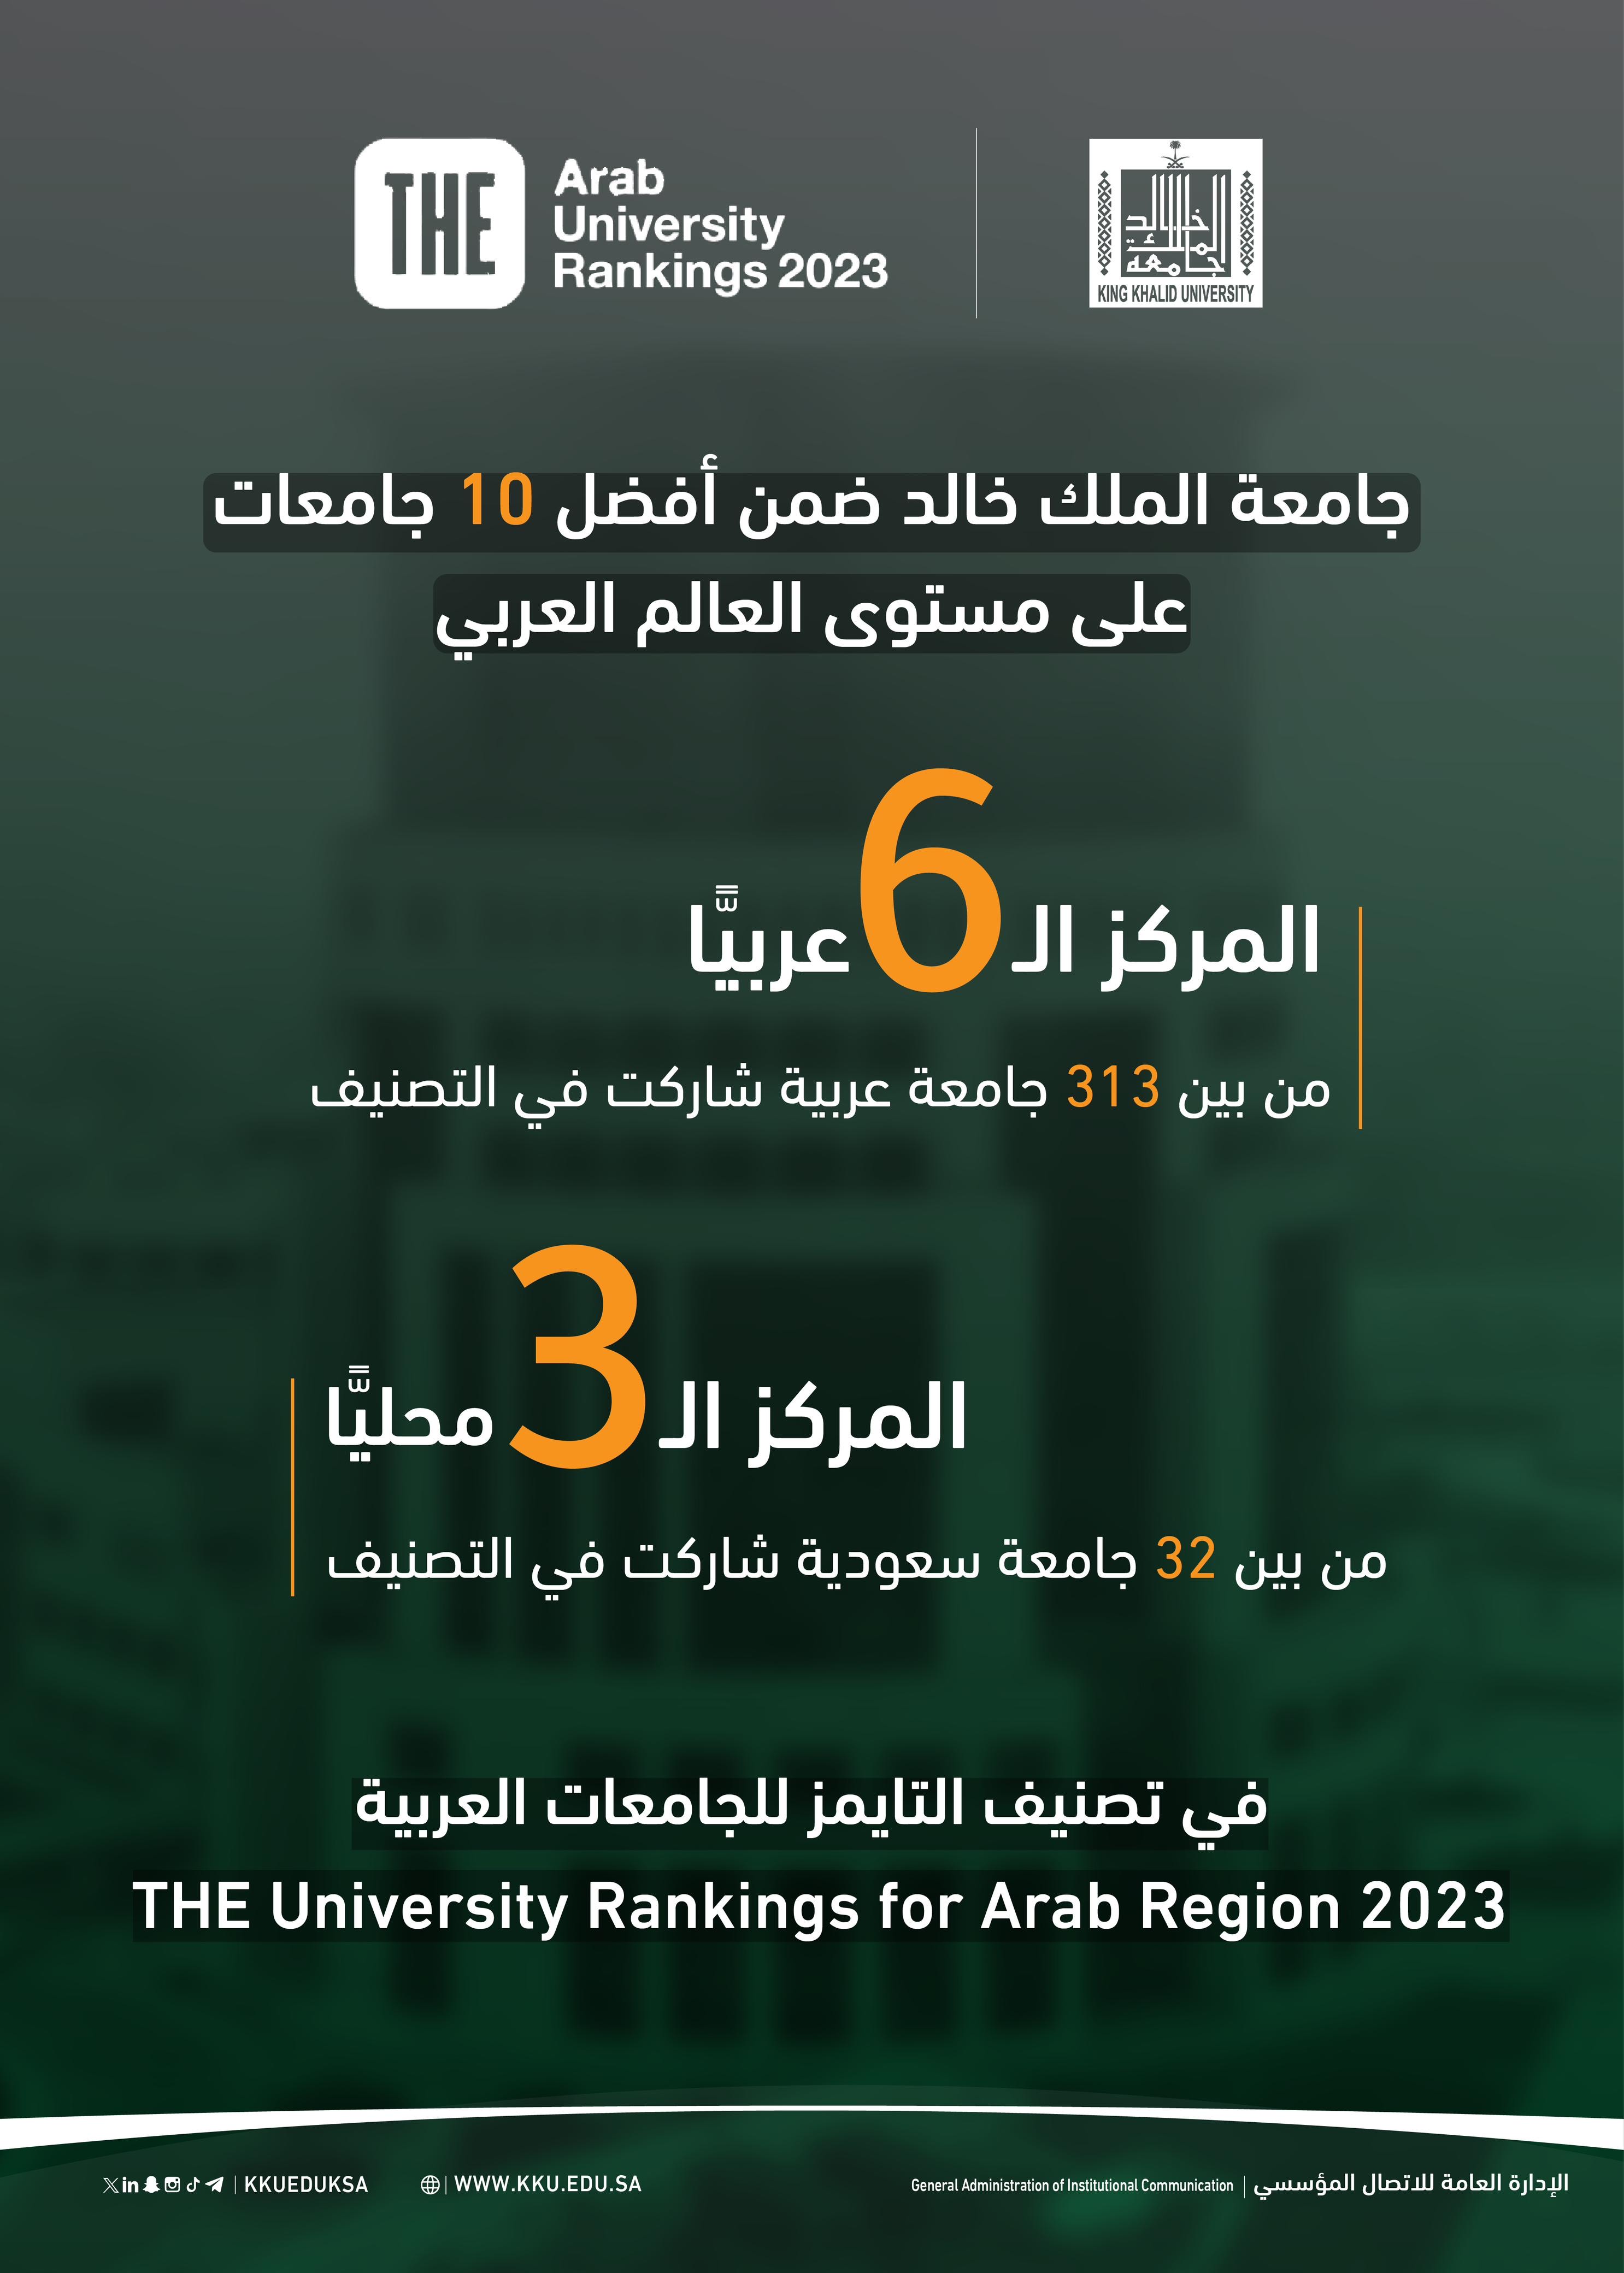 الجامعة السادس عربيًّا والثالث محليًّا في تصنيف التايمز للجامعات العربية 2023